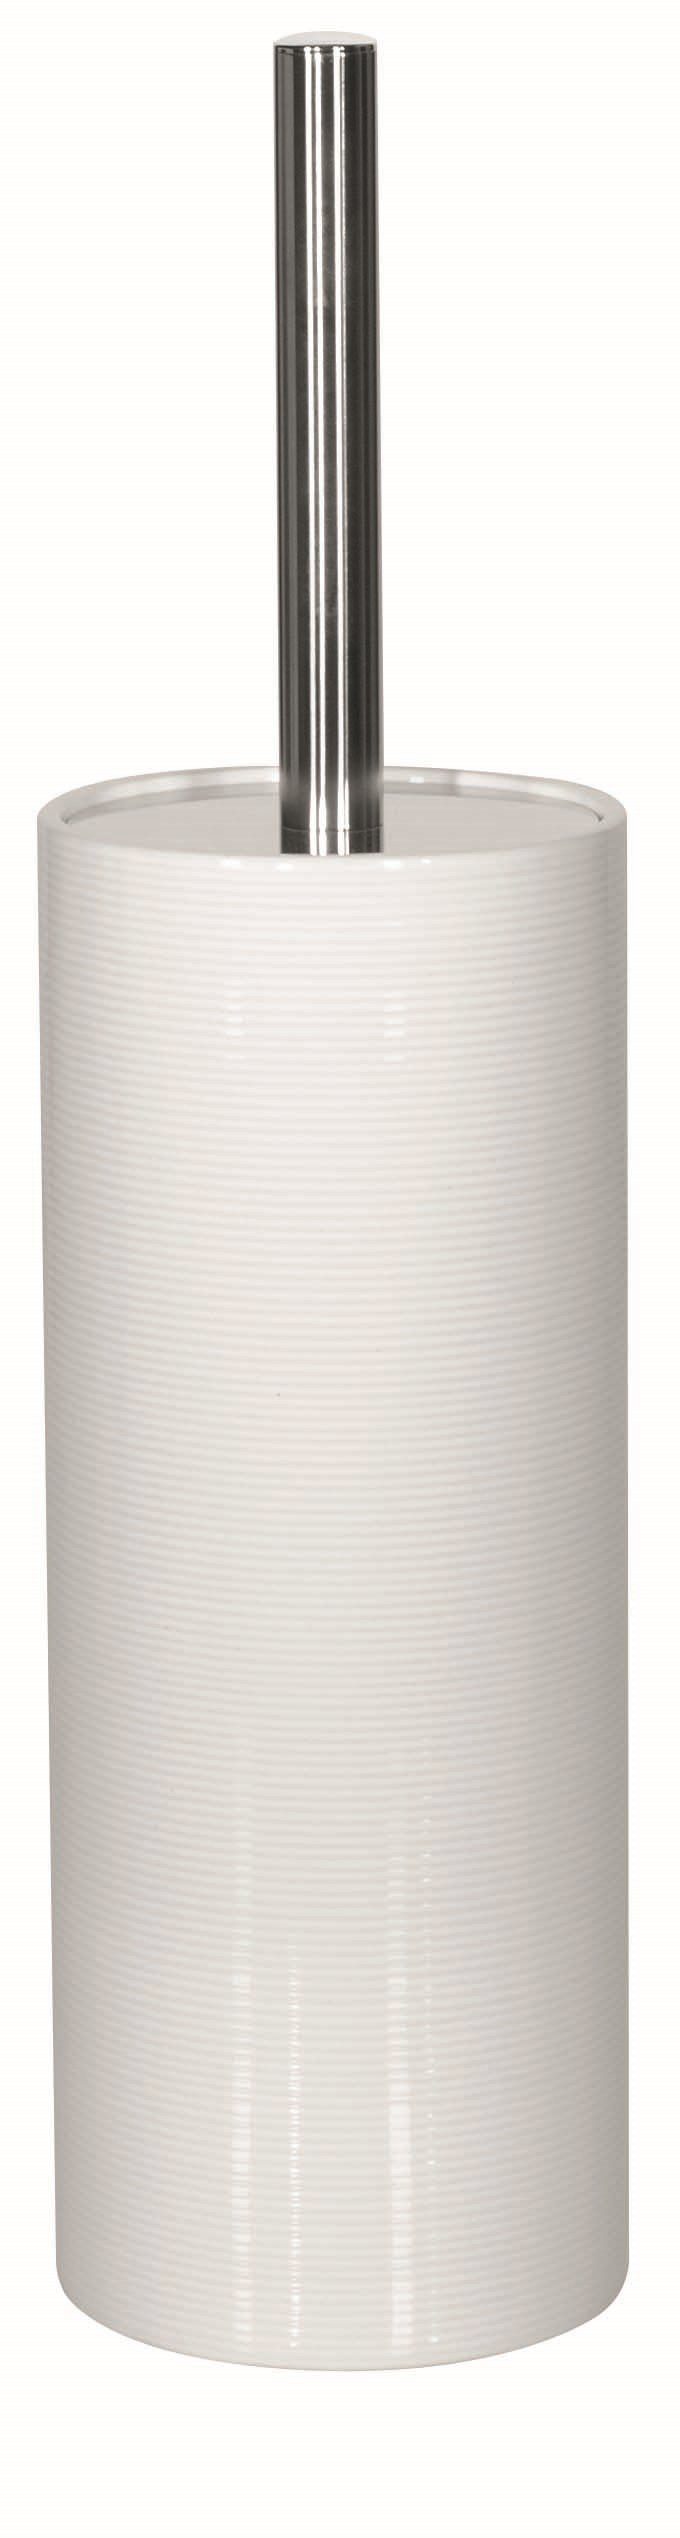 spirella Toilettenpapierhalter WC-Bürste TUBE RIBBED, Toilettenbürste aus  hochwertiger Keramik, mit Deckel, mit Rillenstruktur in 3D-Effekt,  türkisblau, Passend zu anderen Bad-Accessoires der Serie TUBE RIBBED